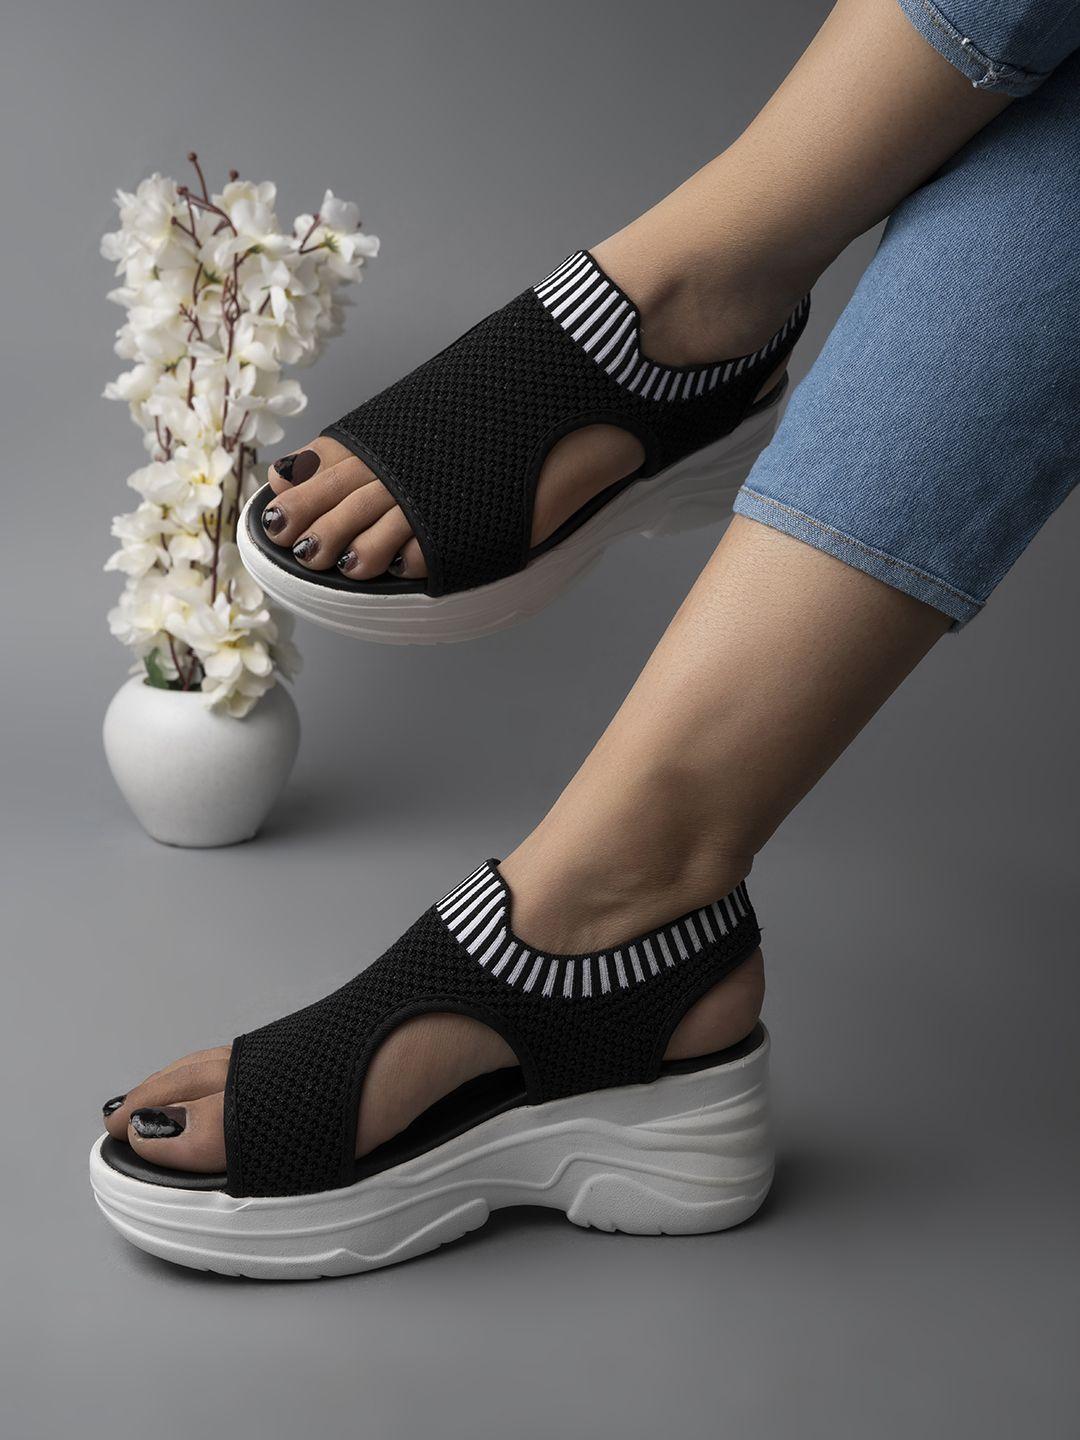 shoetopia woven design open toe wedge heel mules